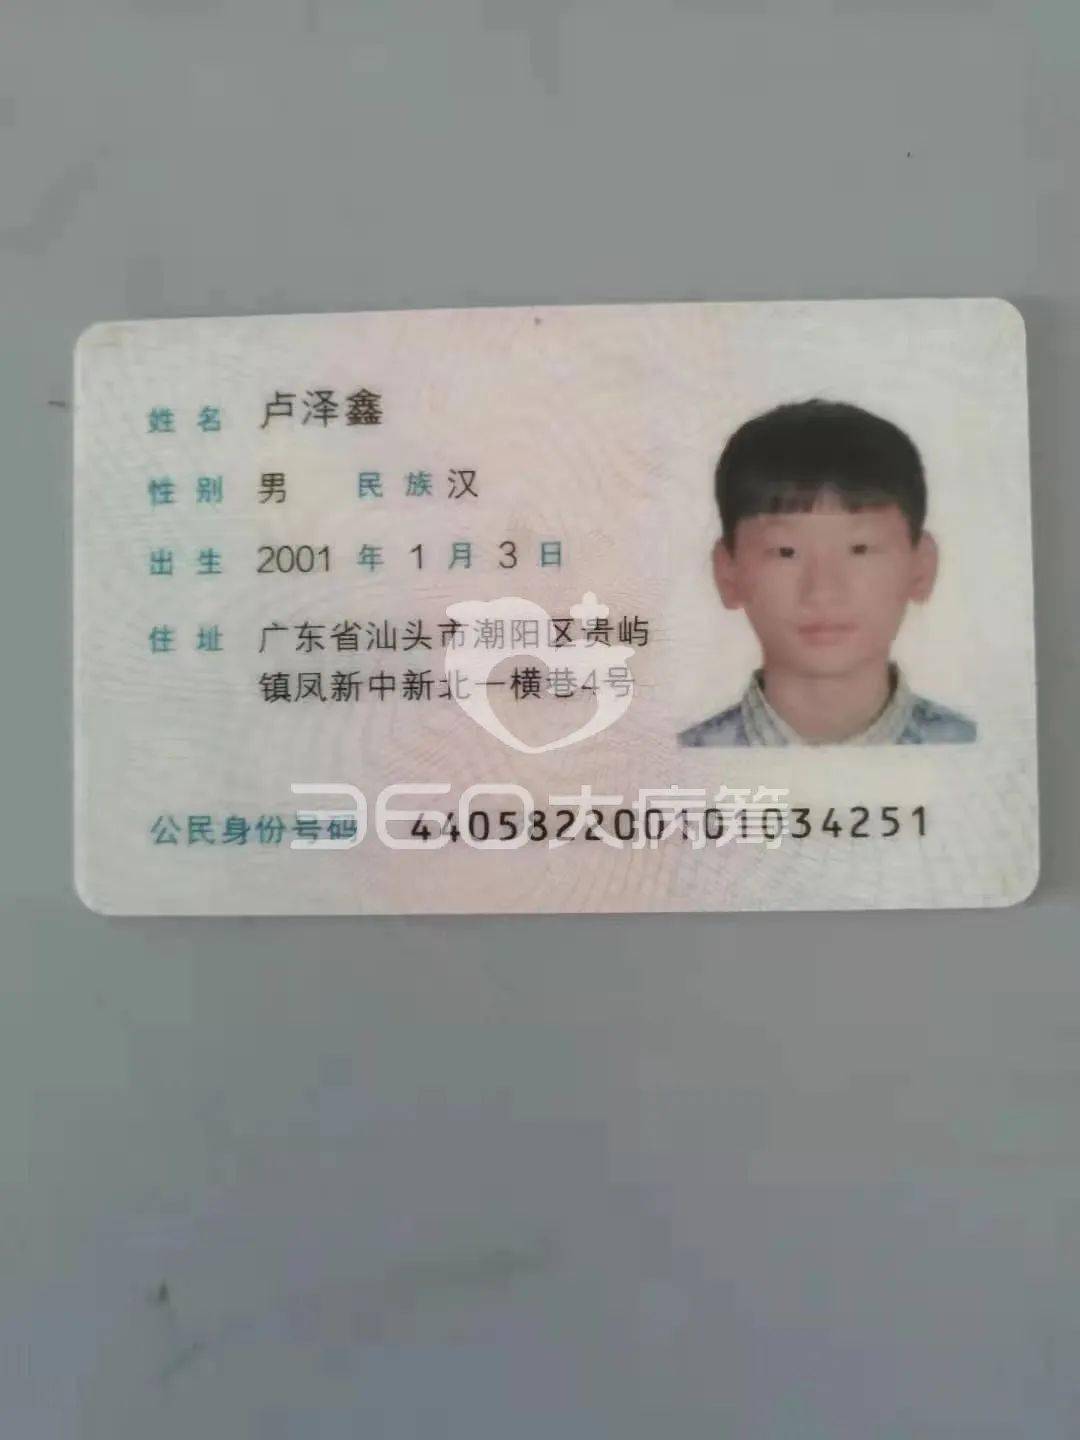 我叫卢燕珍,我儿子叫卢泽鑫,来自汕头市潮阳区贵屿镇凤新村,逼于无奈